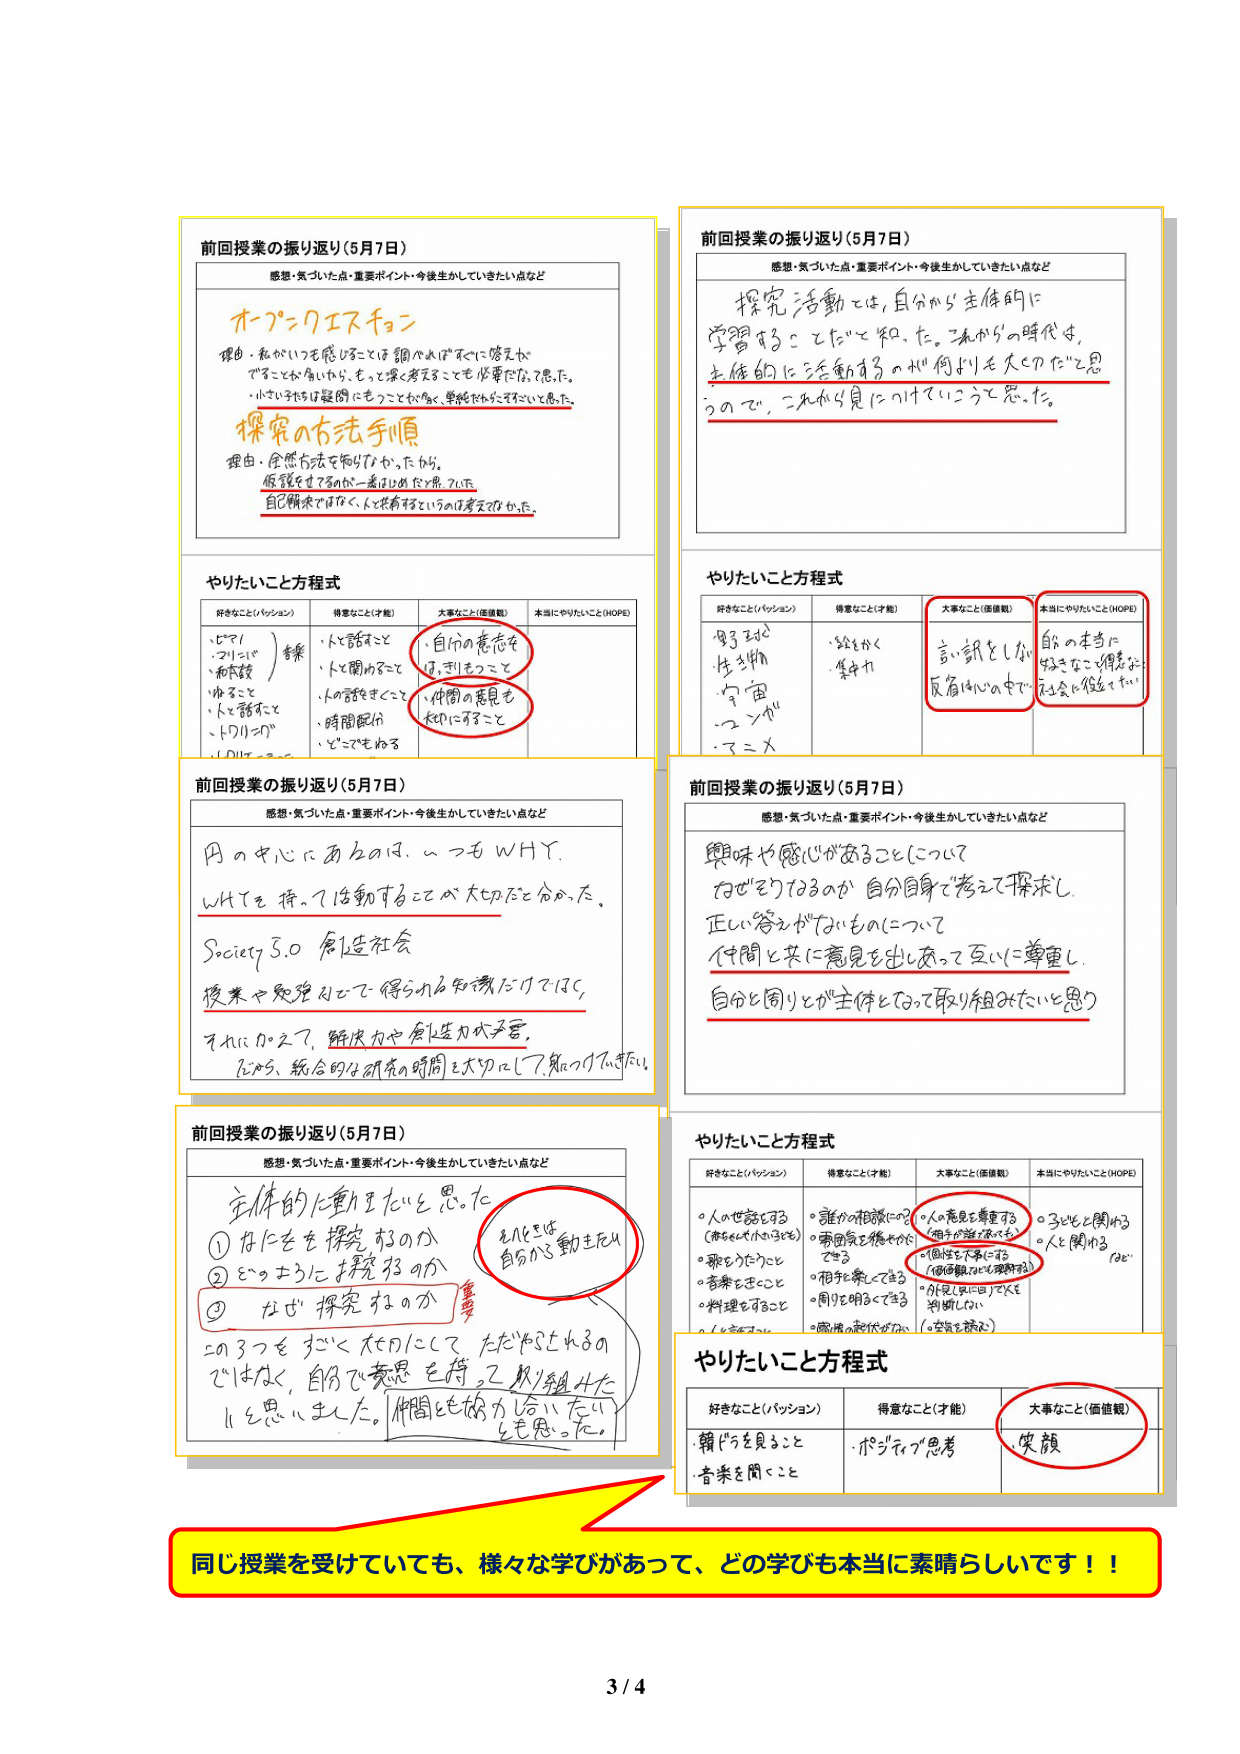 http://www.shotoku.jp/gsh/news/2%E5%8F%B7_%E6%8C%AF%E3%82%8A%E8%BF%94%E3%82%8Anew%20-A4_03.png